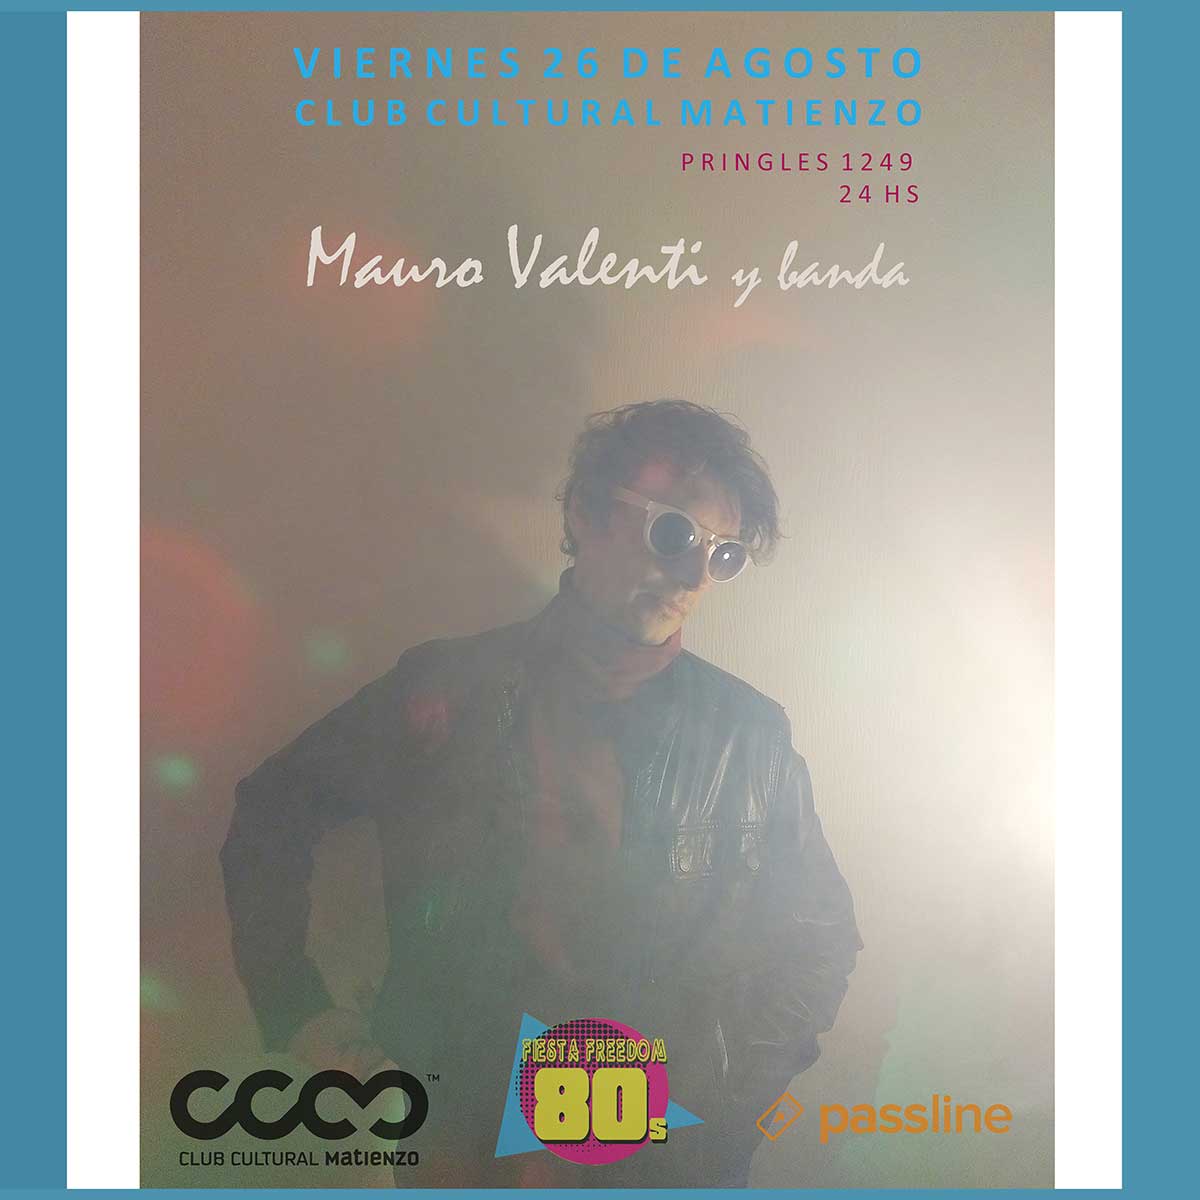 Mauro Valenti se presentará en el Club Cultural Matienzo